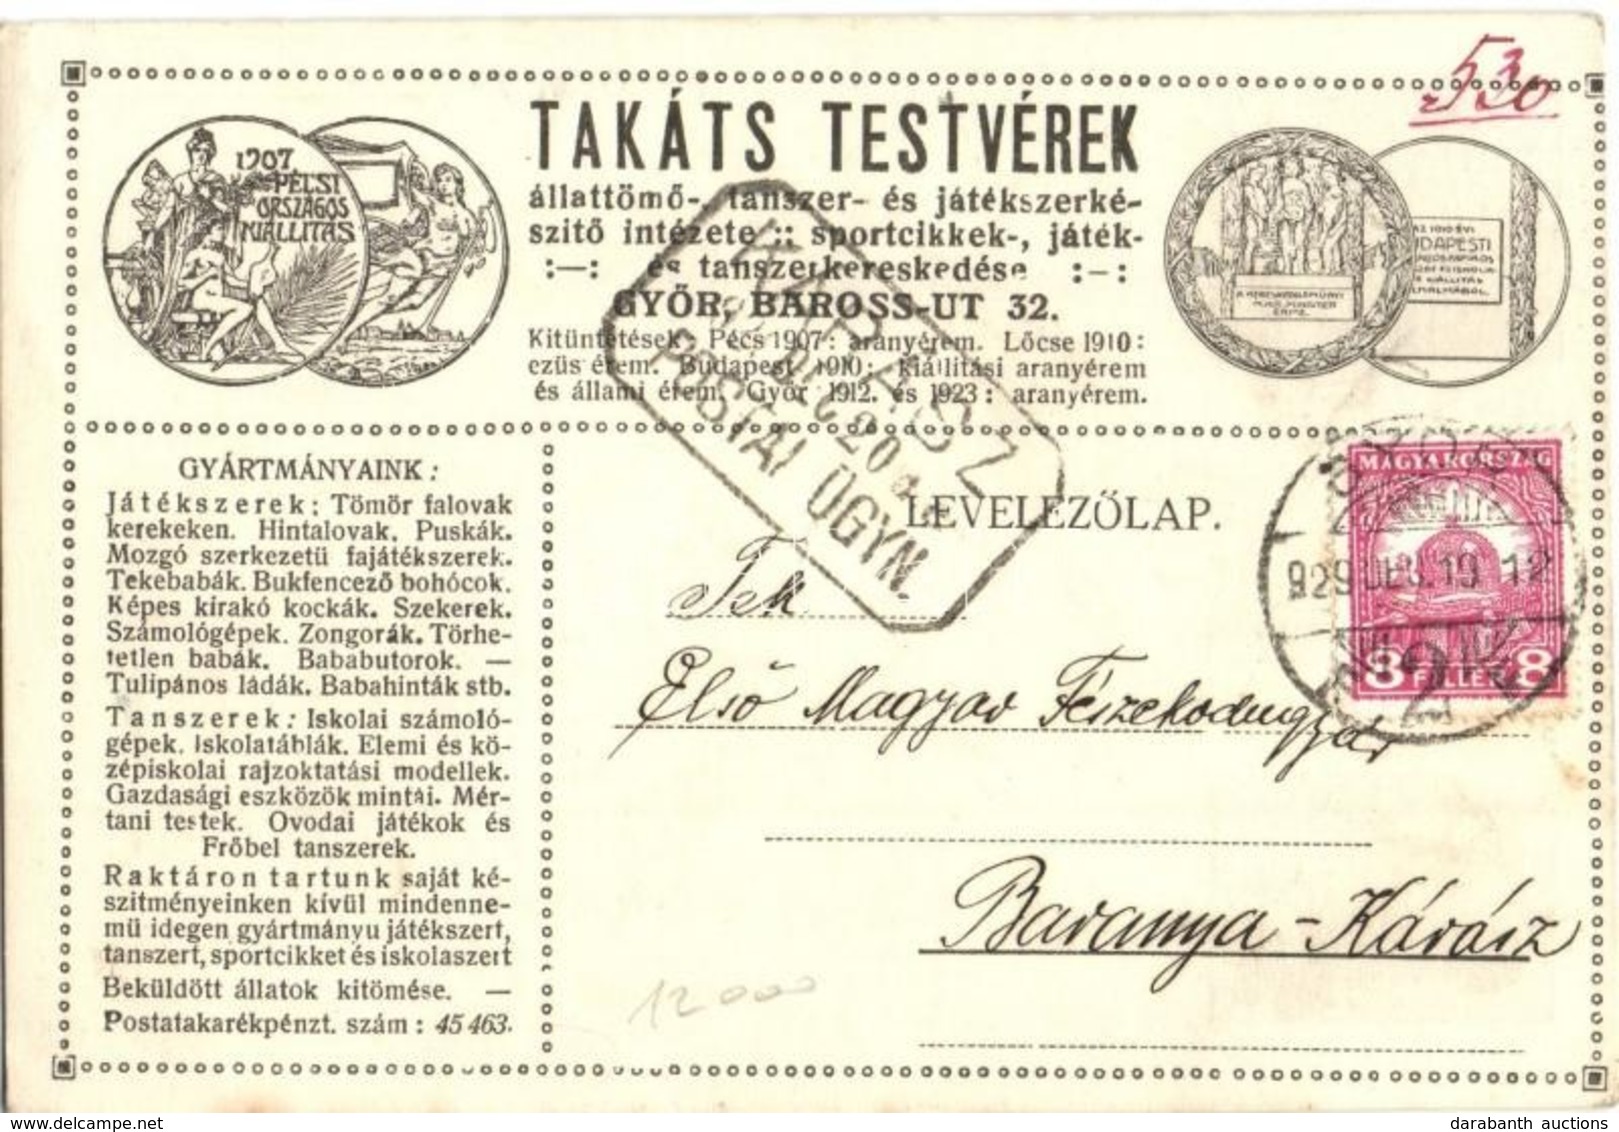 T2/T3 1929 Takáts Testvérek állattömő-, Tanszer- és Játékszerkészítő Intézete. Győr, Baross út 32. Saját Reklámlapjuk és - Non Classificati